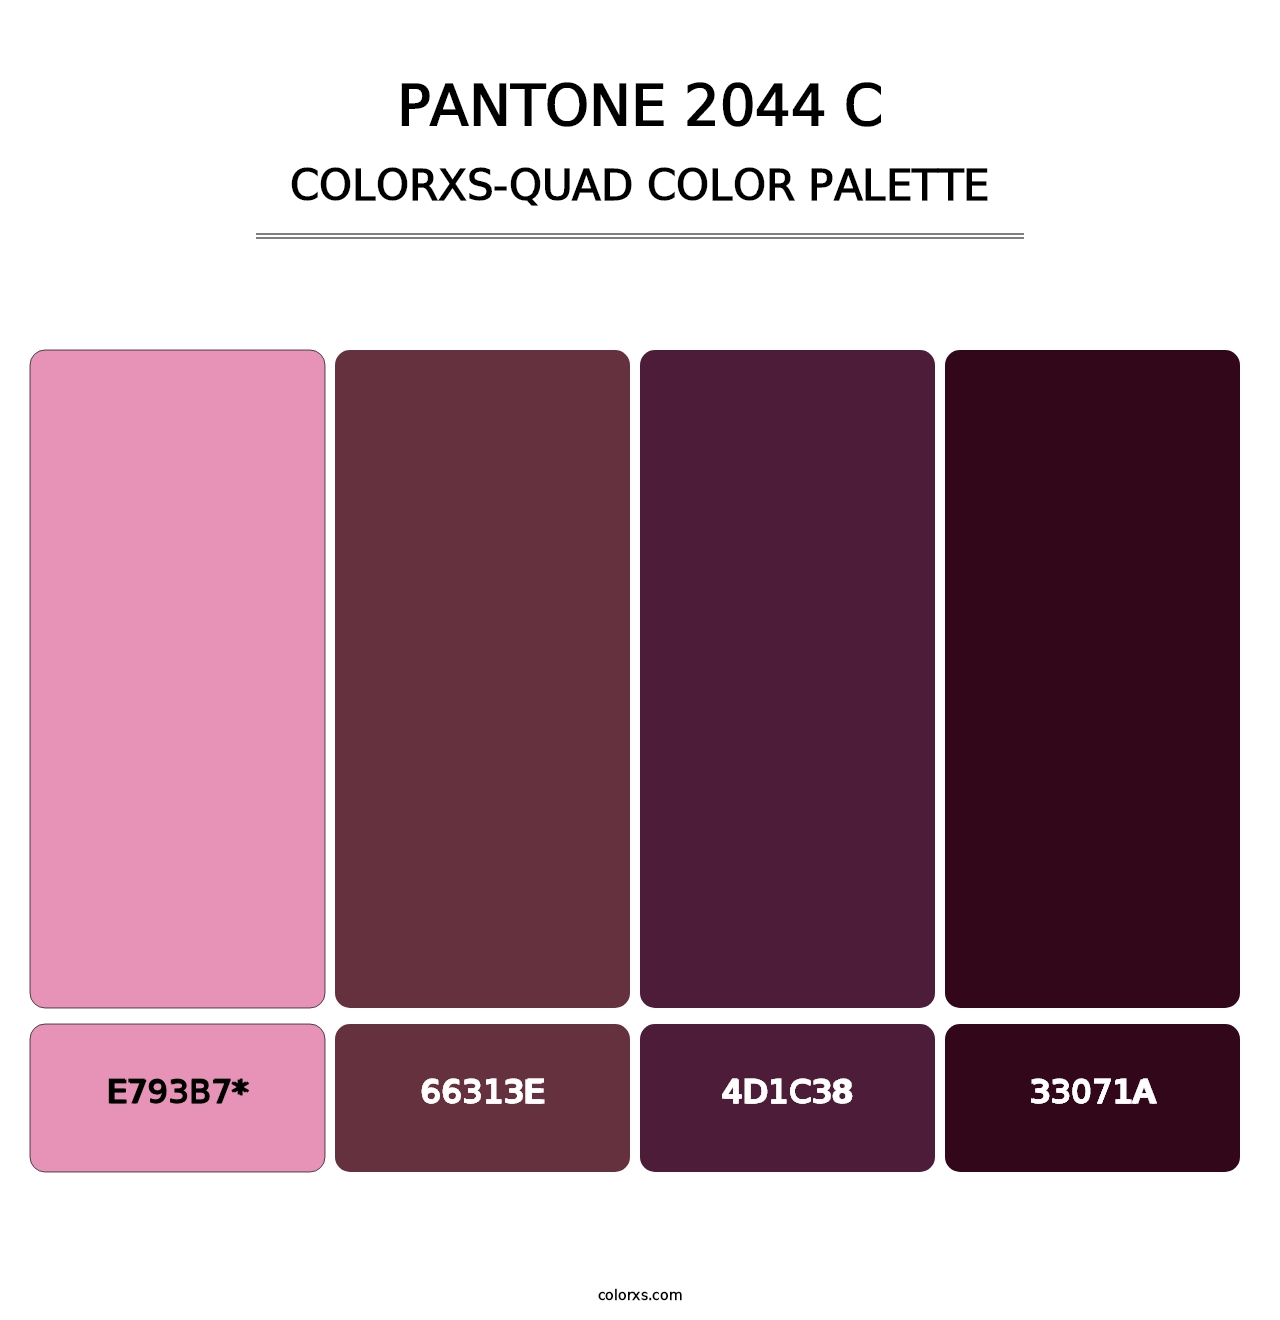 PANTONE 2044 C - Colorxs Quad Palette